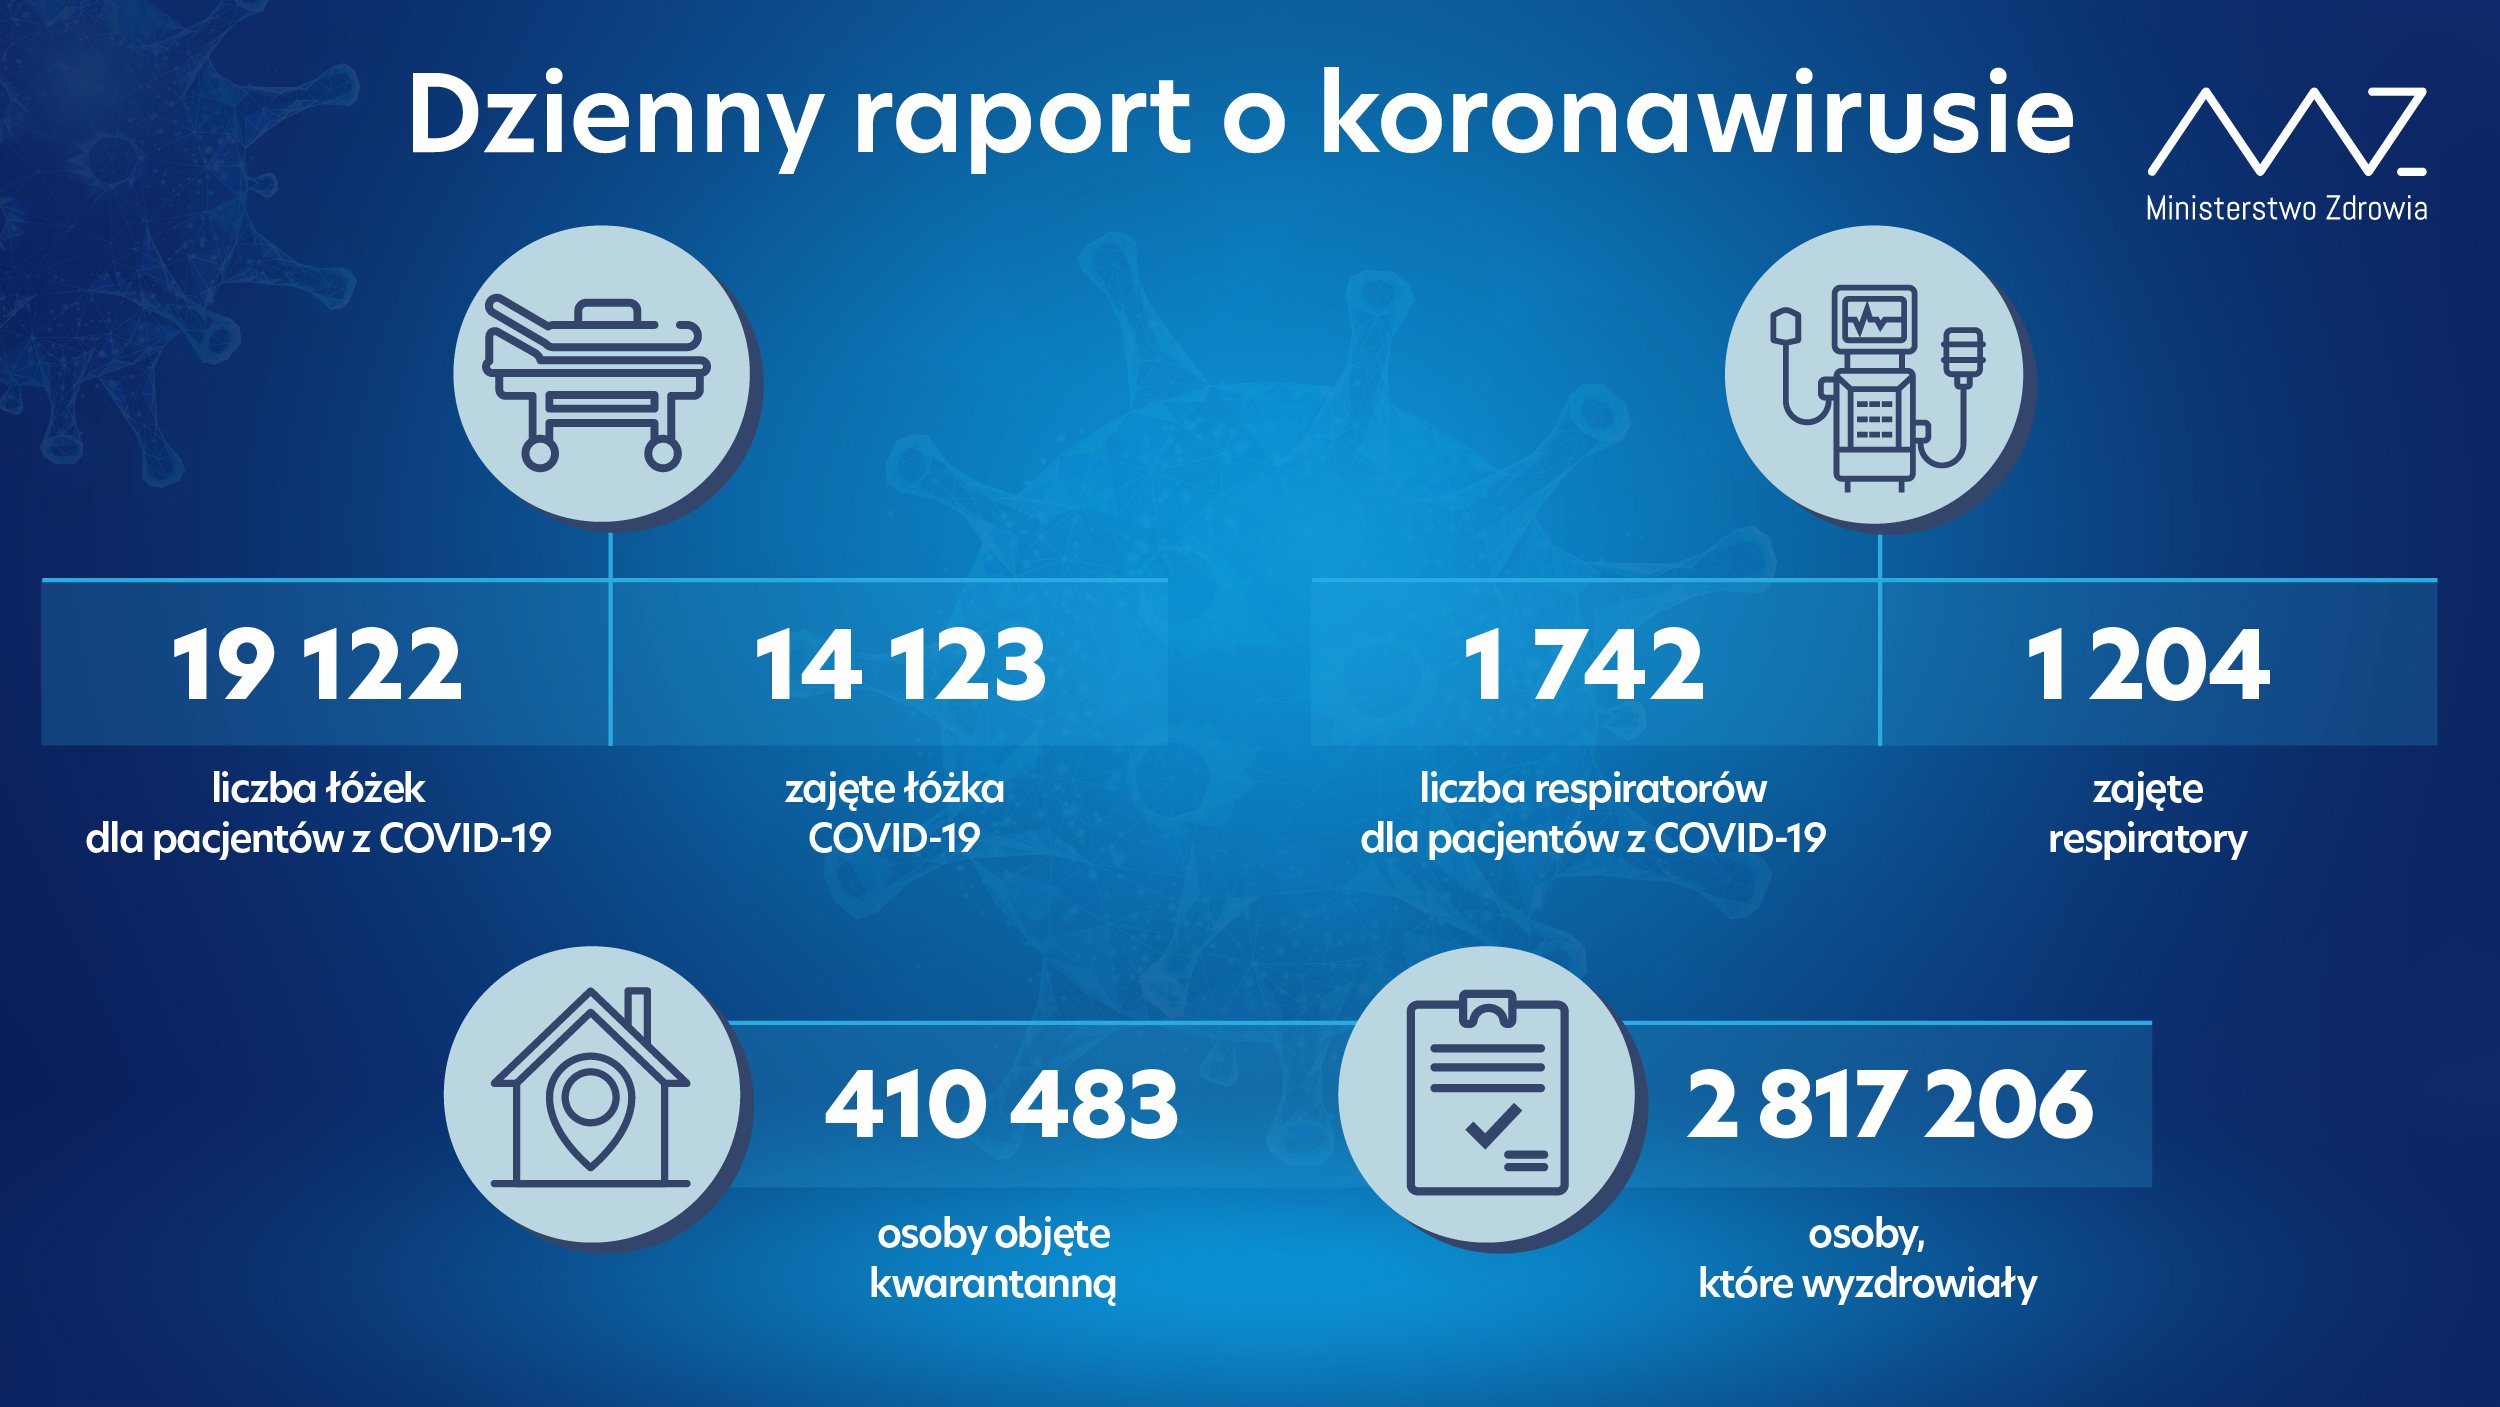 Rośnie liczba zakażeń koronawirusem w woj. mazowieckim, śląskim i zachodniopomorskim. Nowe dane Ministerstwa Zdrowia